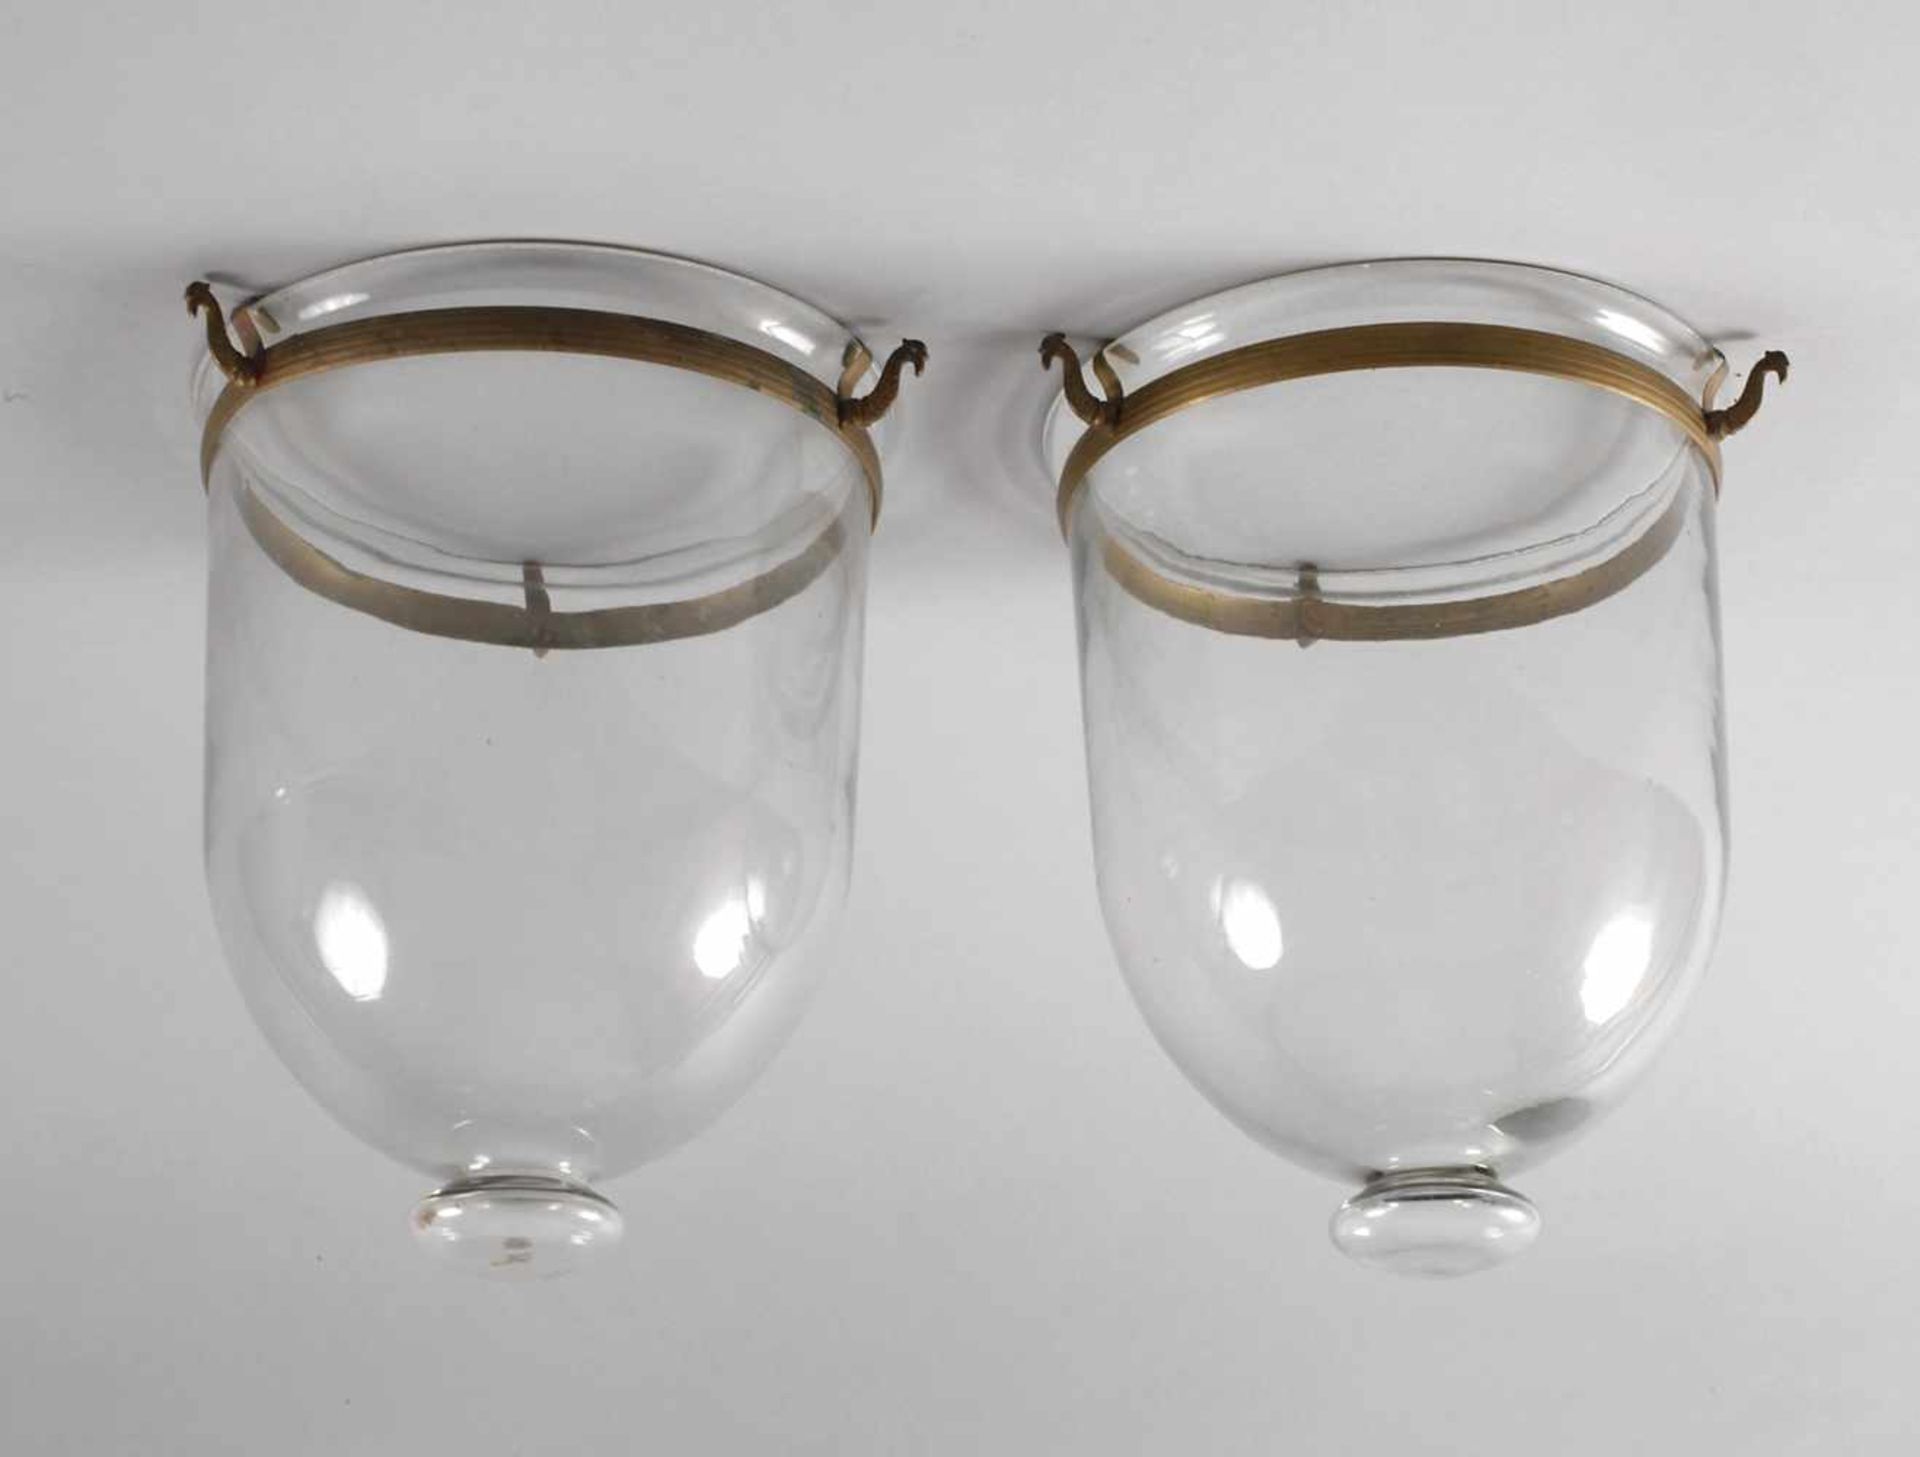 Zwei Lampenschirme2. Hälfte 19. Jh., Klarglasglocken mit ringförmigen Messingmontierungen, leichte